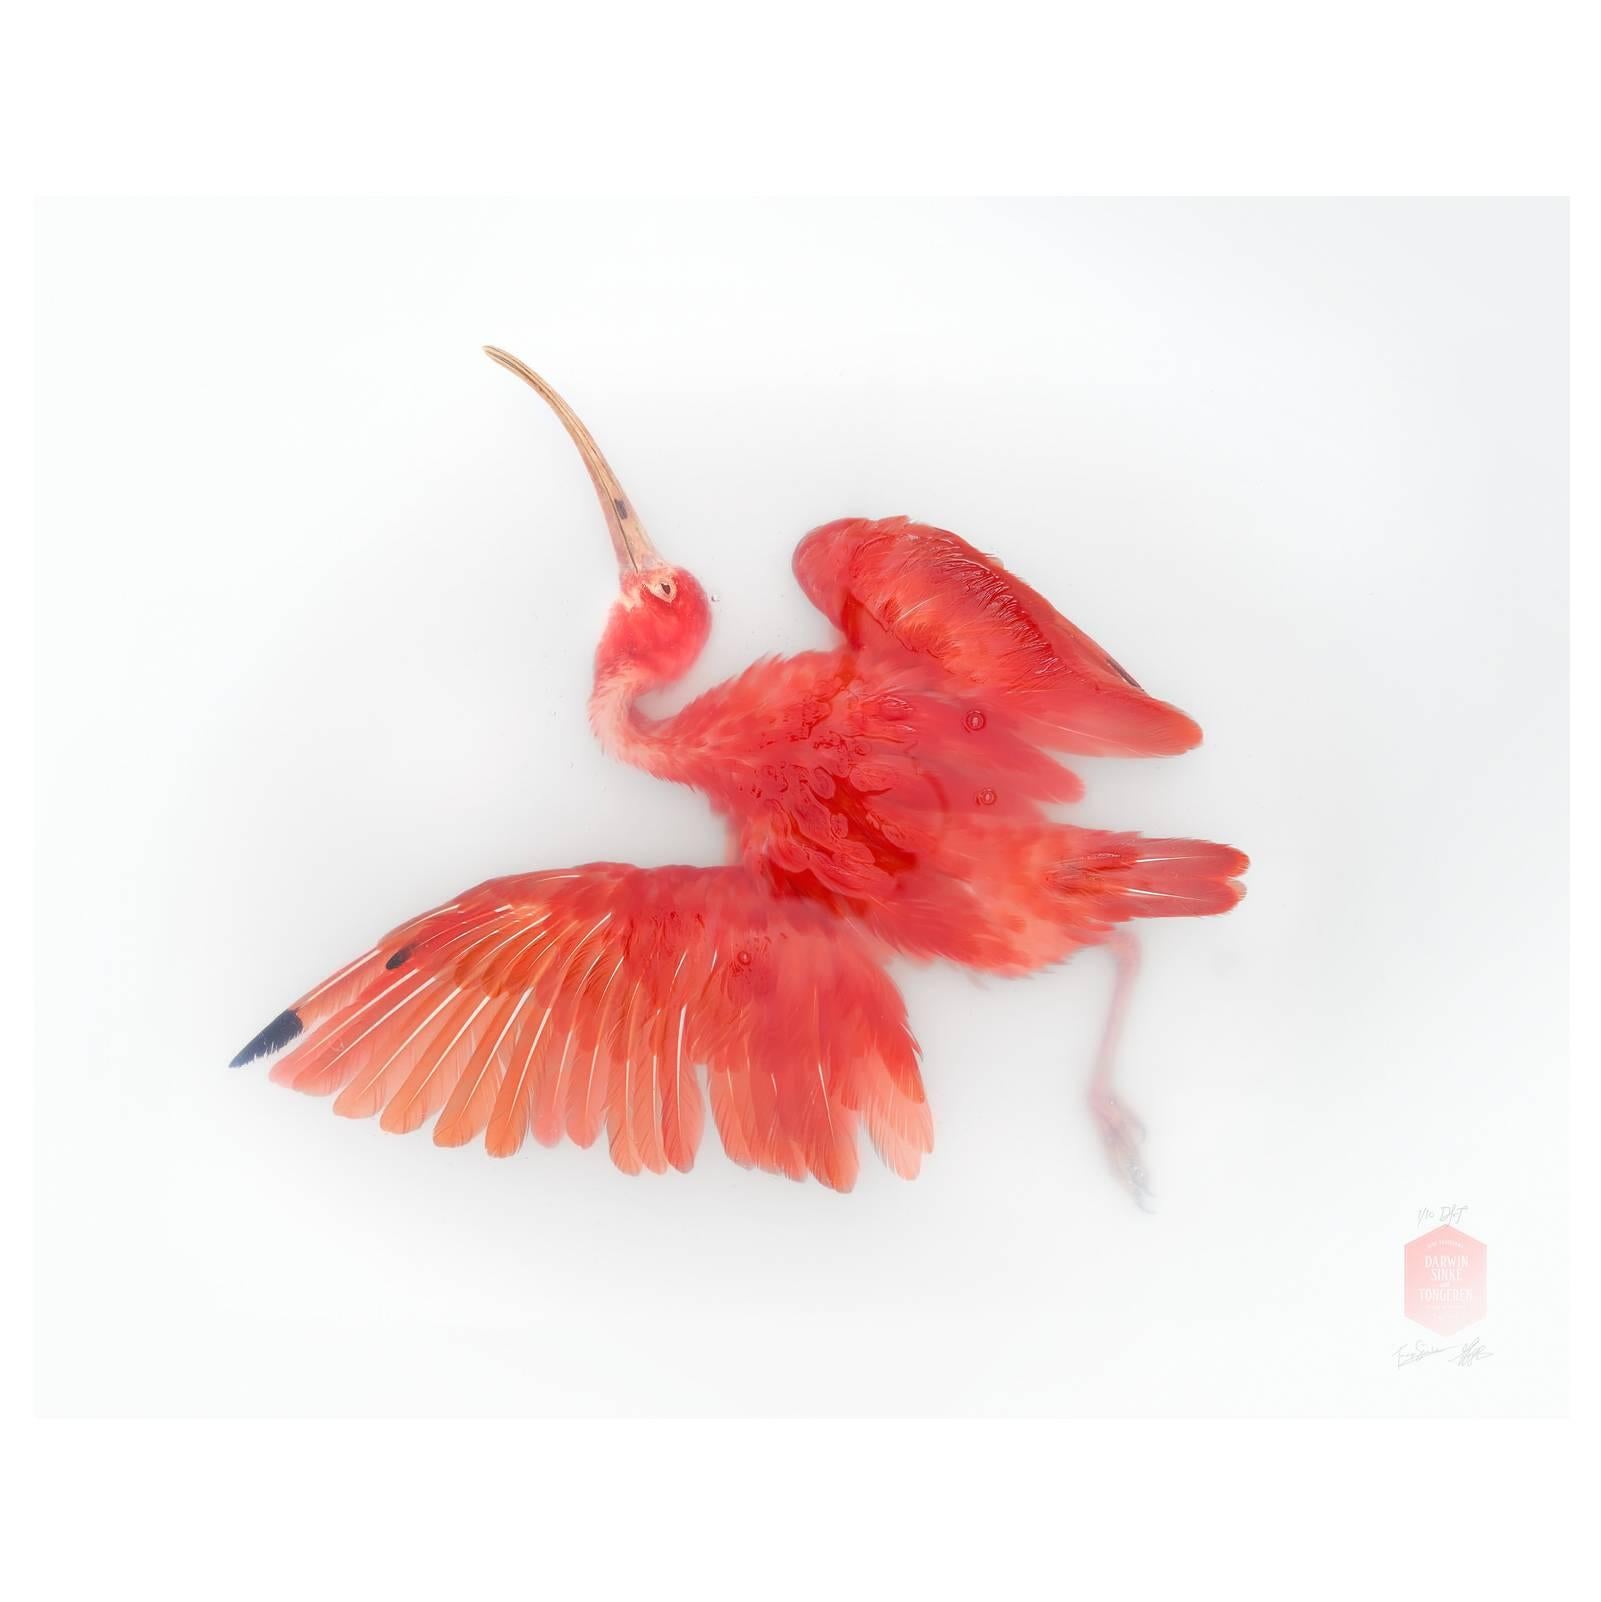 Kunstdruck mit dem Titel „Unbekannte Pose von Scarlet Ibis“ von Sinke & Van Tongeren